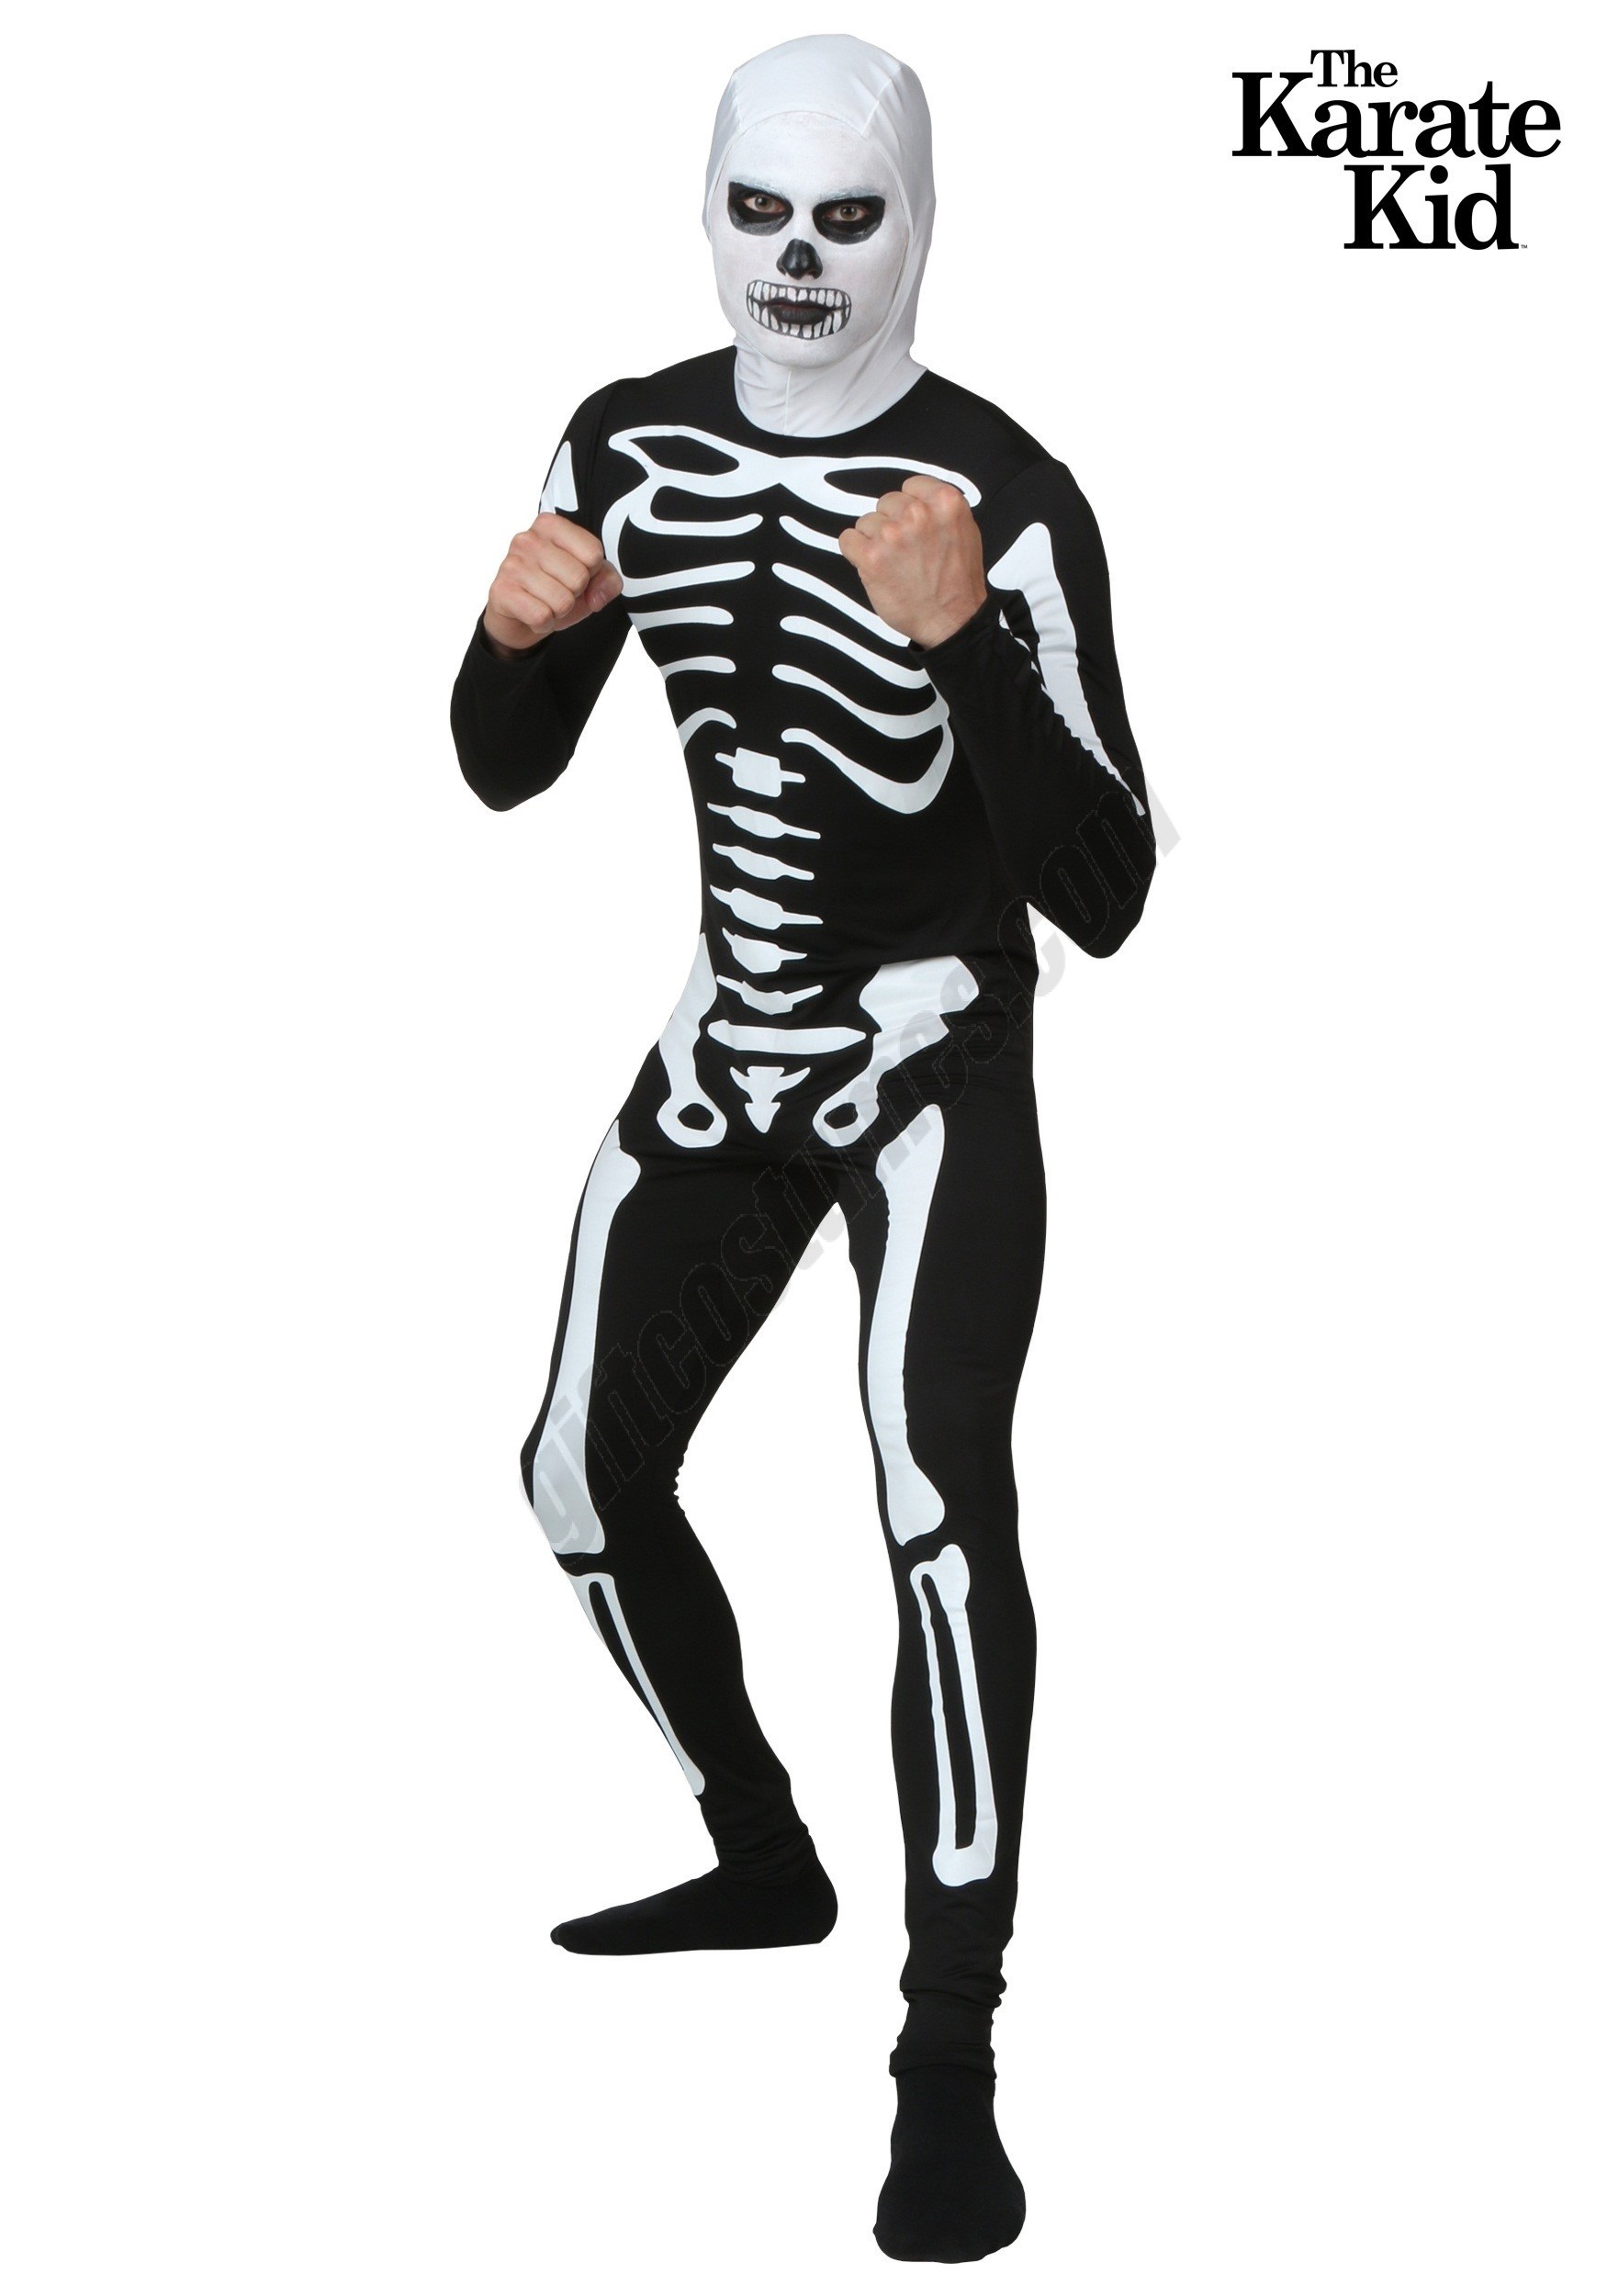 Karate Kid Skeleton Costume Suit Promotions - Karate Kid Skeleton Costume Suit Promotions